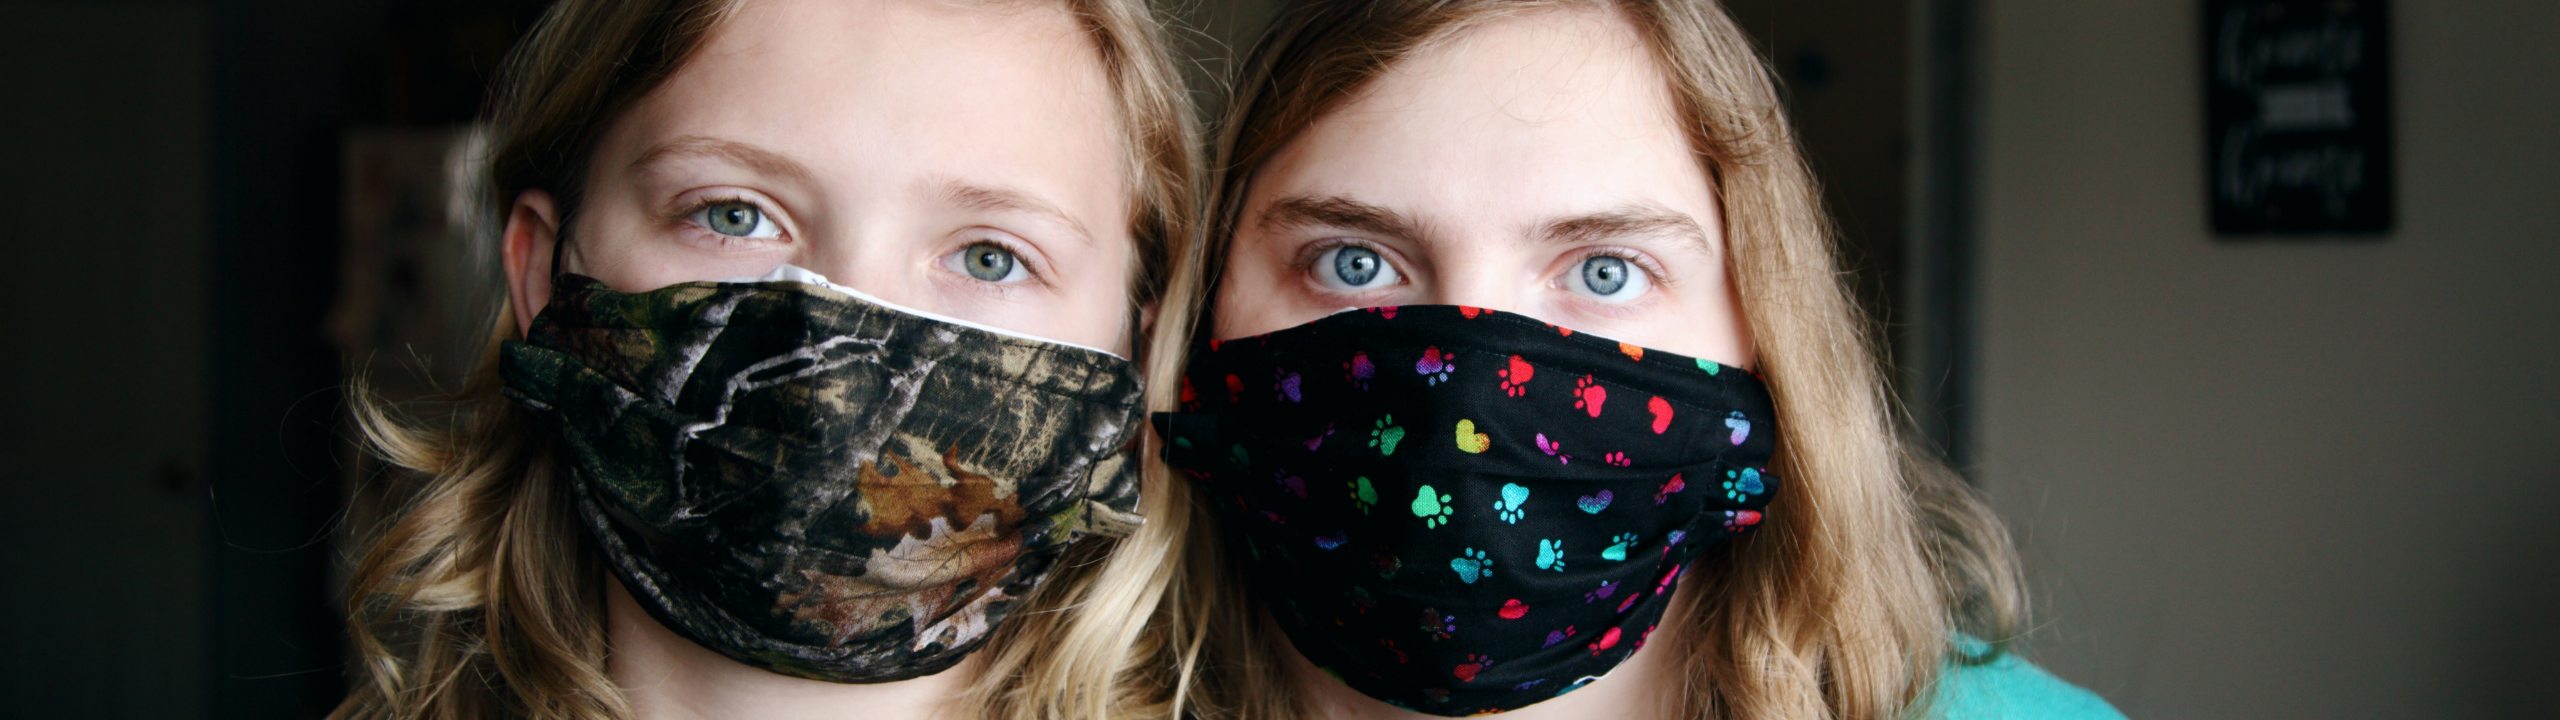 Two children in masks.